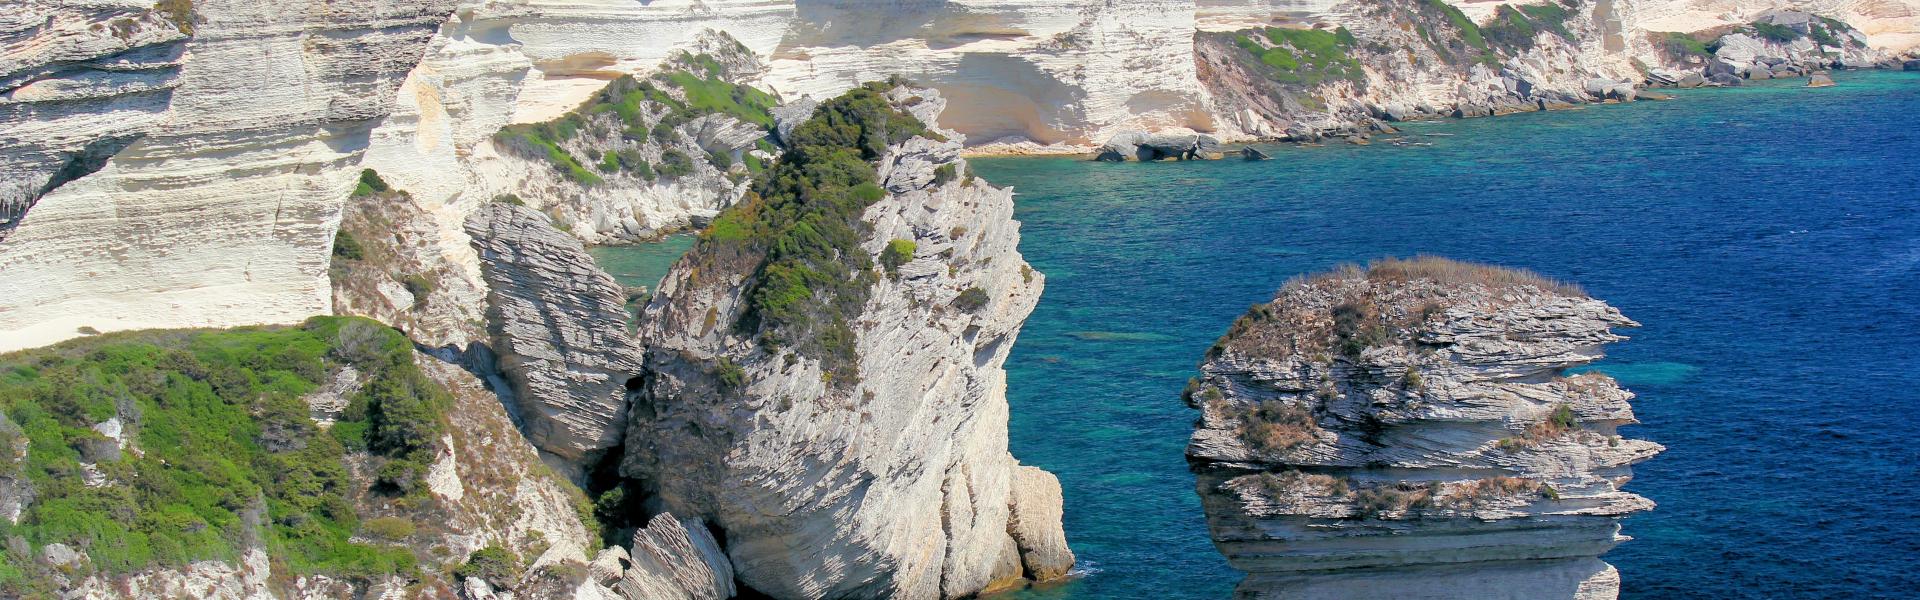 Location de vacances à Piano - Haute-Corse - amivac